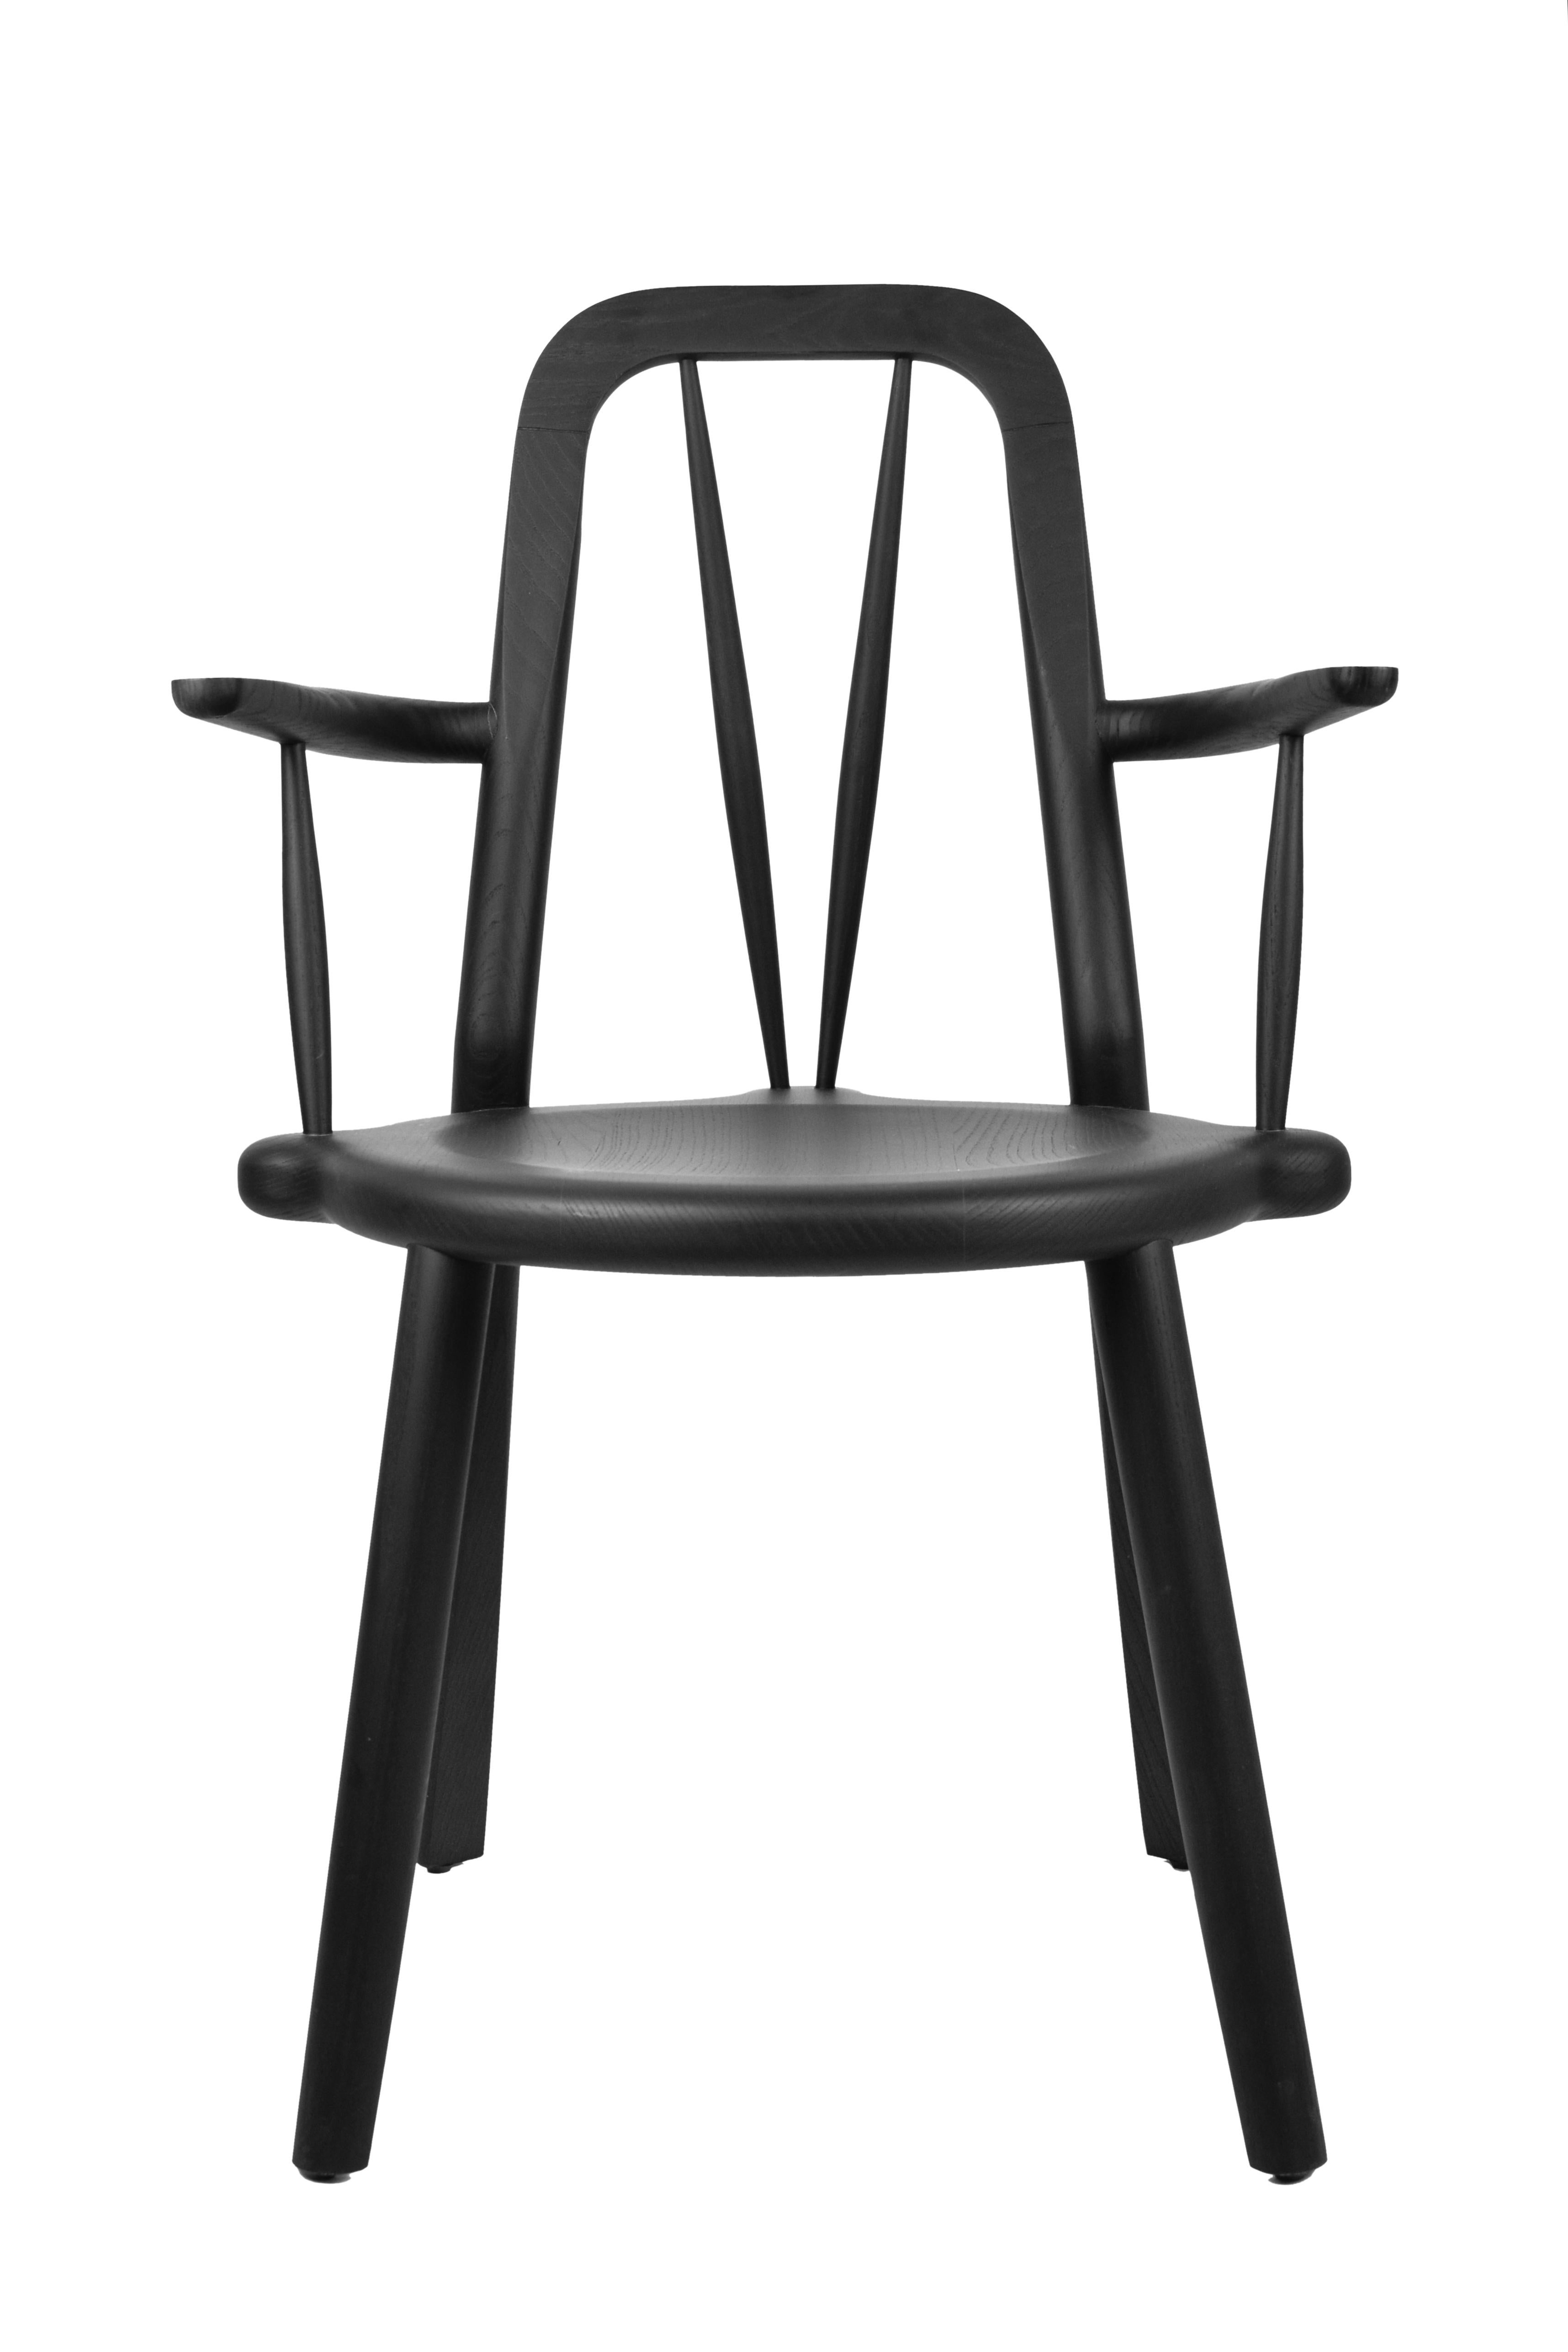 Inspiriert vom zeitlosen Design des Bacalhau-Stuhls, bietet Canoa eine moderne Variante, die sich nahtlos in jeden Raum einfügt. Ganz gleich, ob Sie Ihren Essbereich aufwerten oder Ihrem Wohnzimmer einen Hauch von Raffinesse verleihen möchten, Canoa